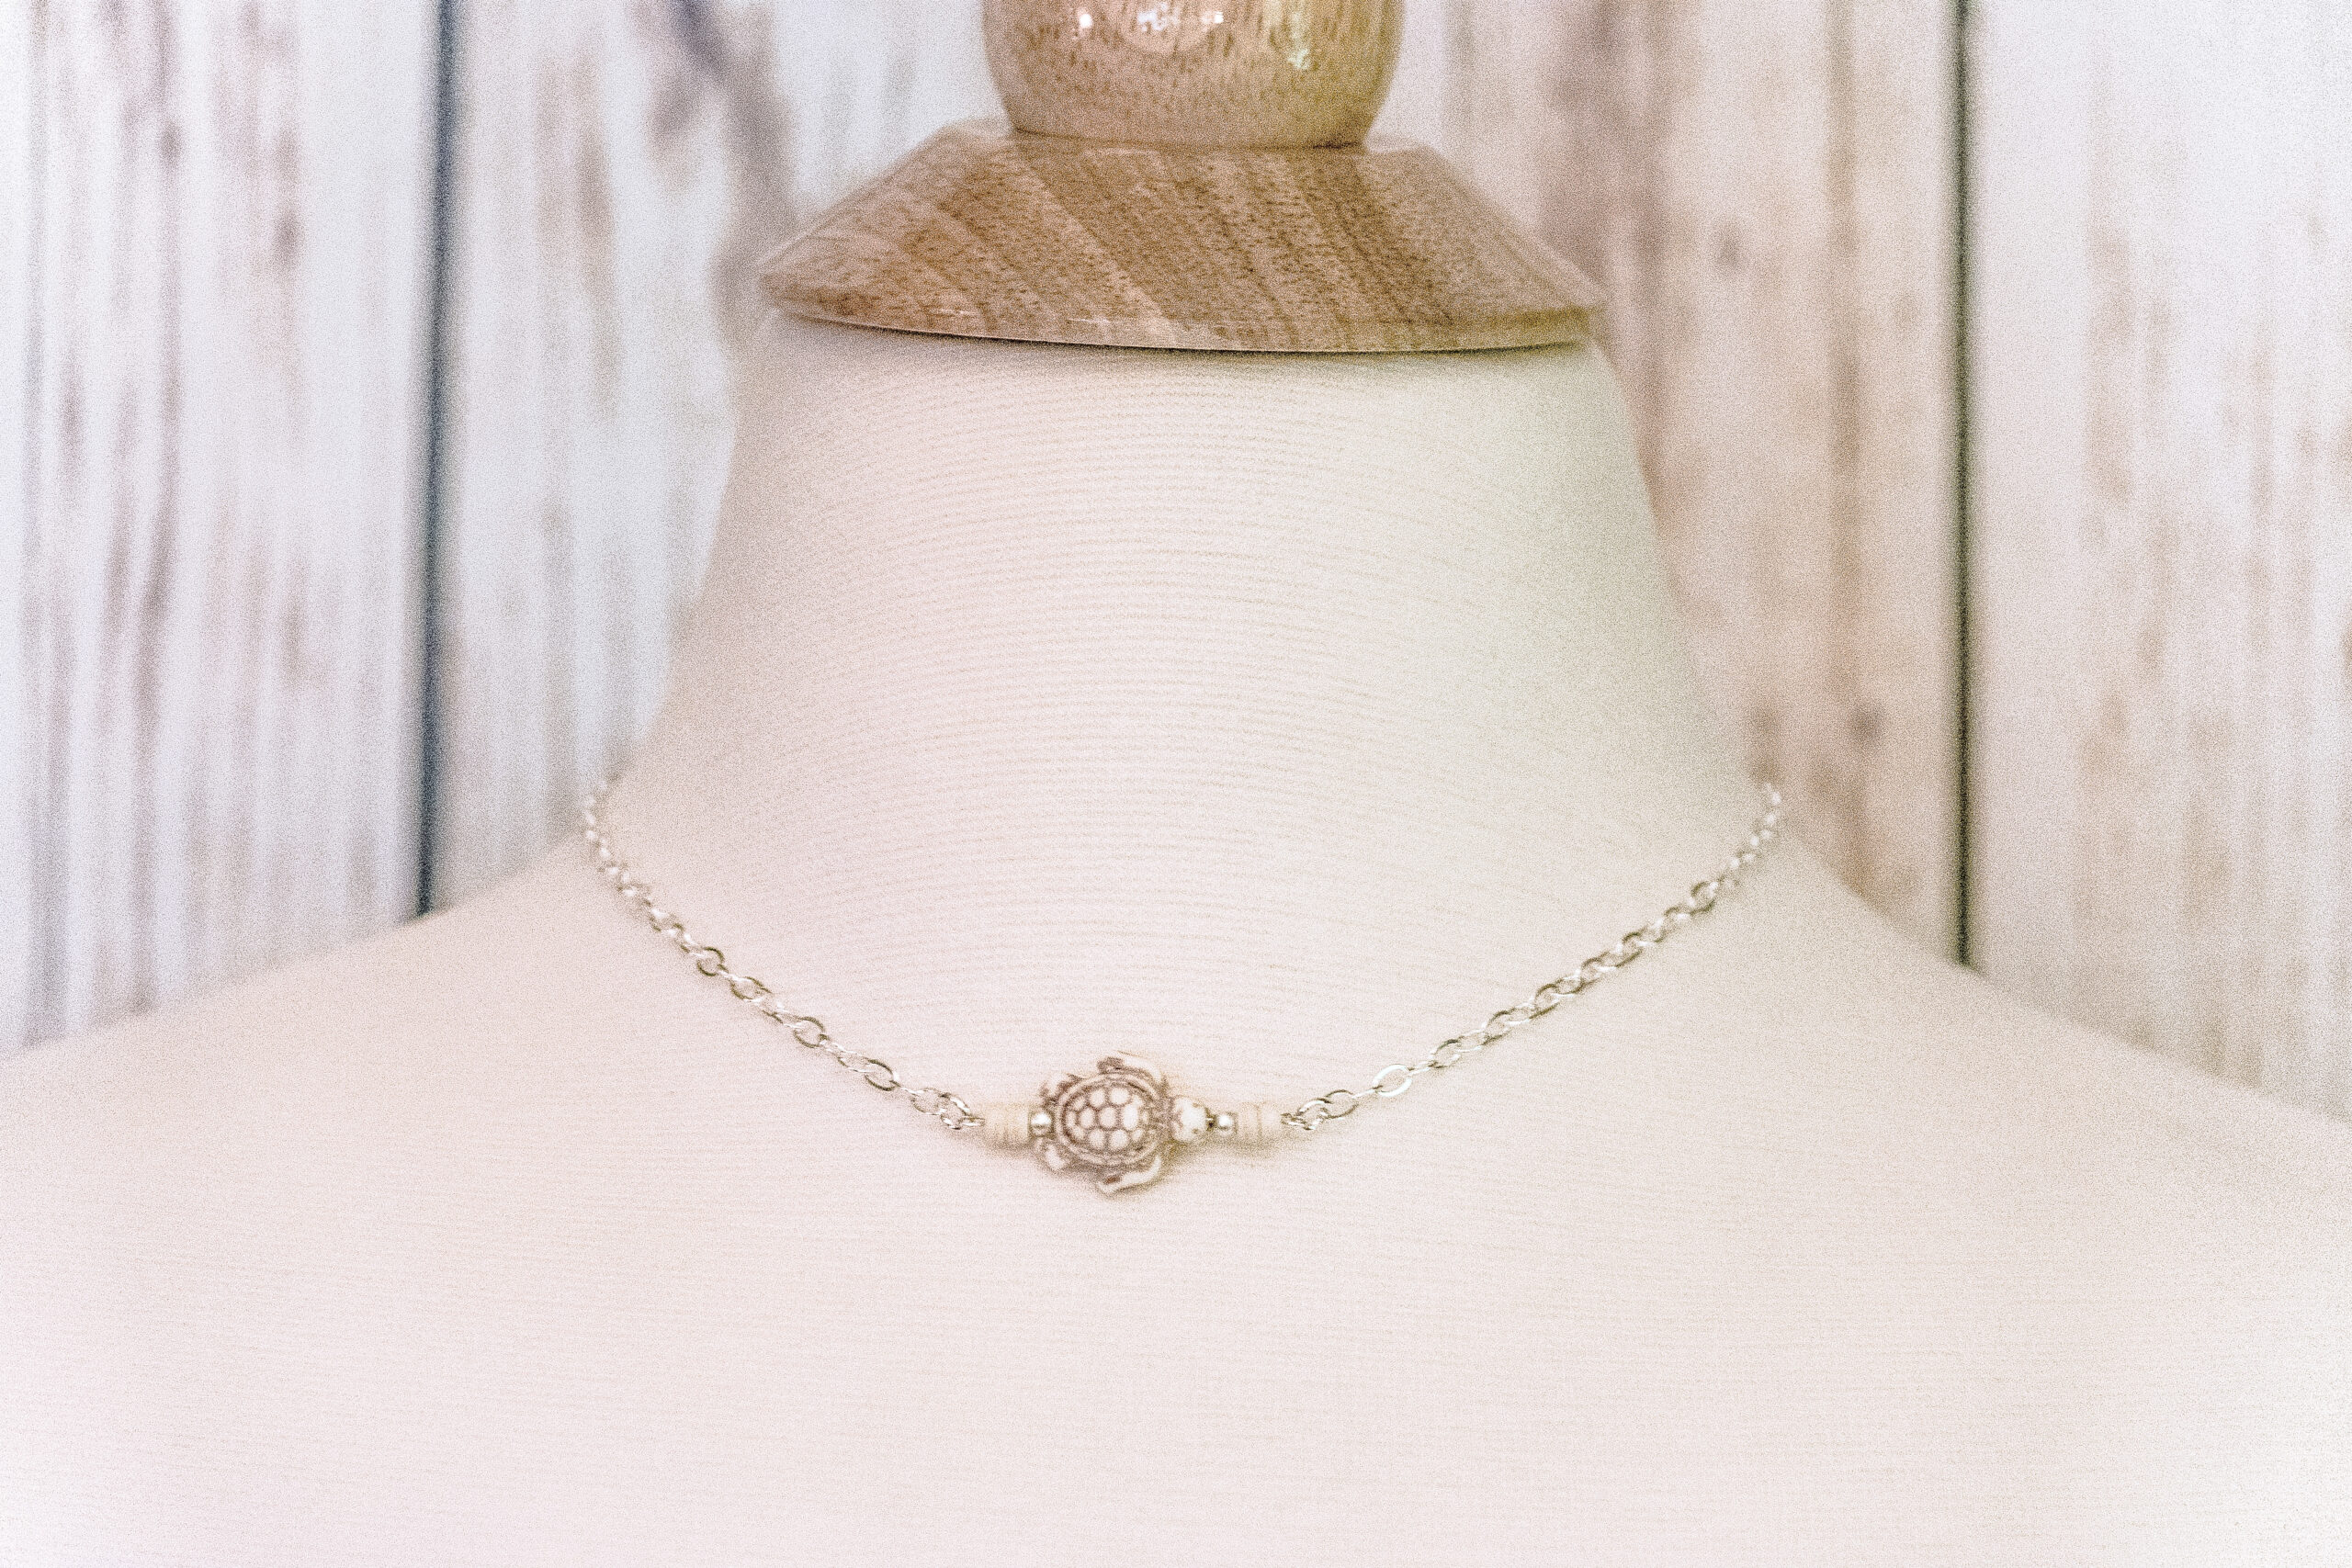 Sea Turtle Chain Necklace